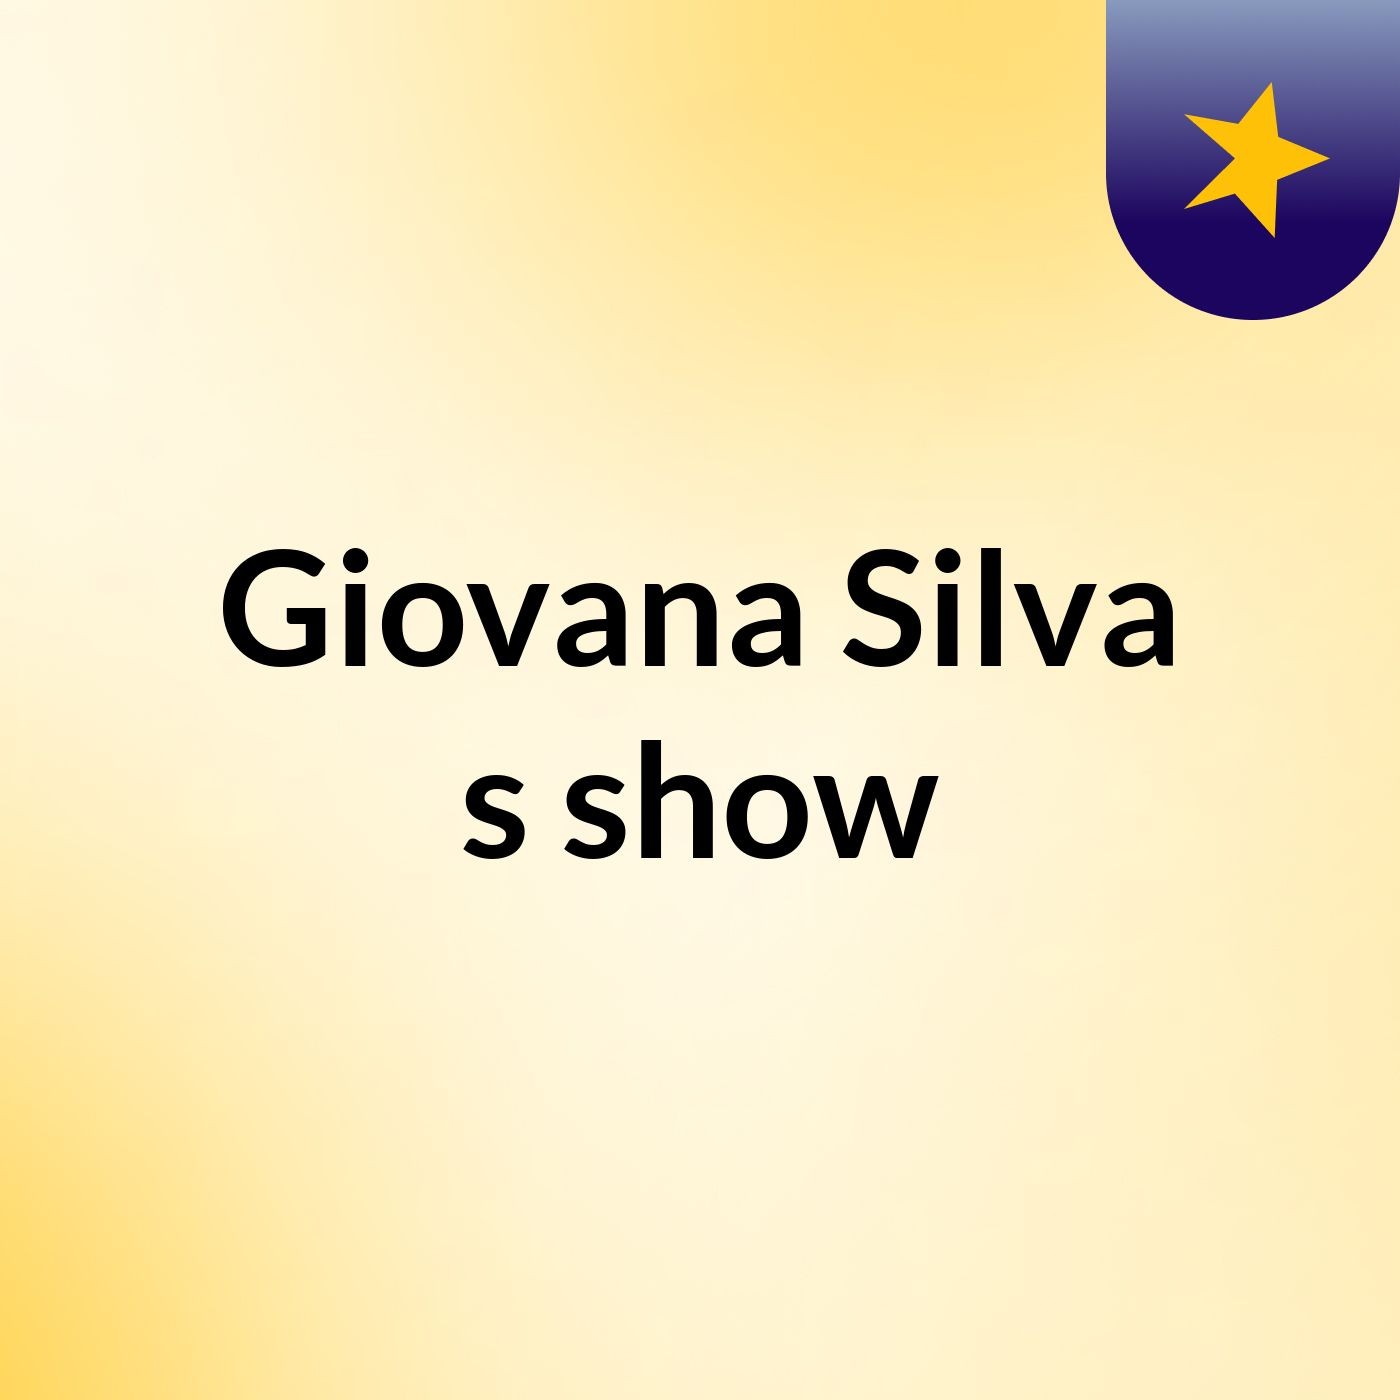 Giovana Silva's show